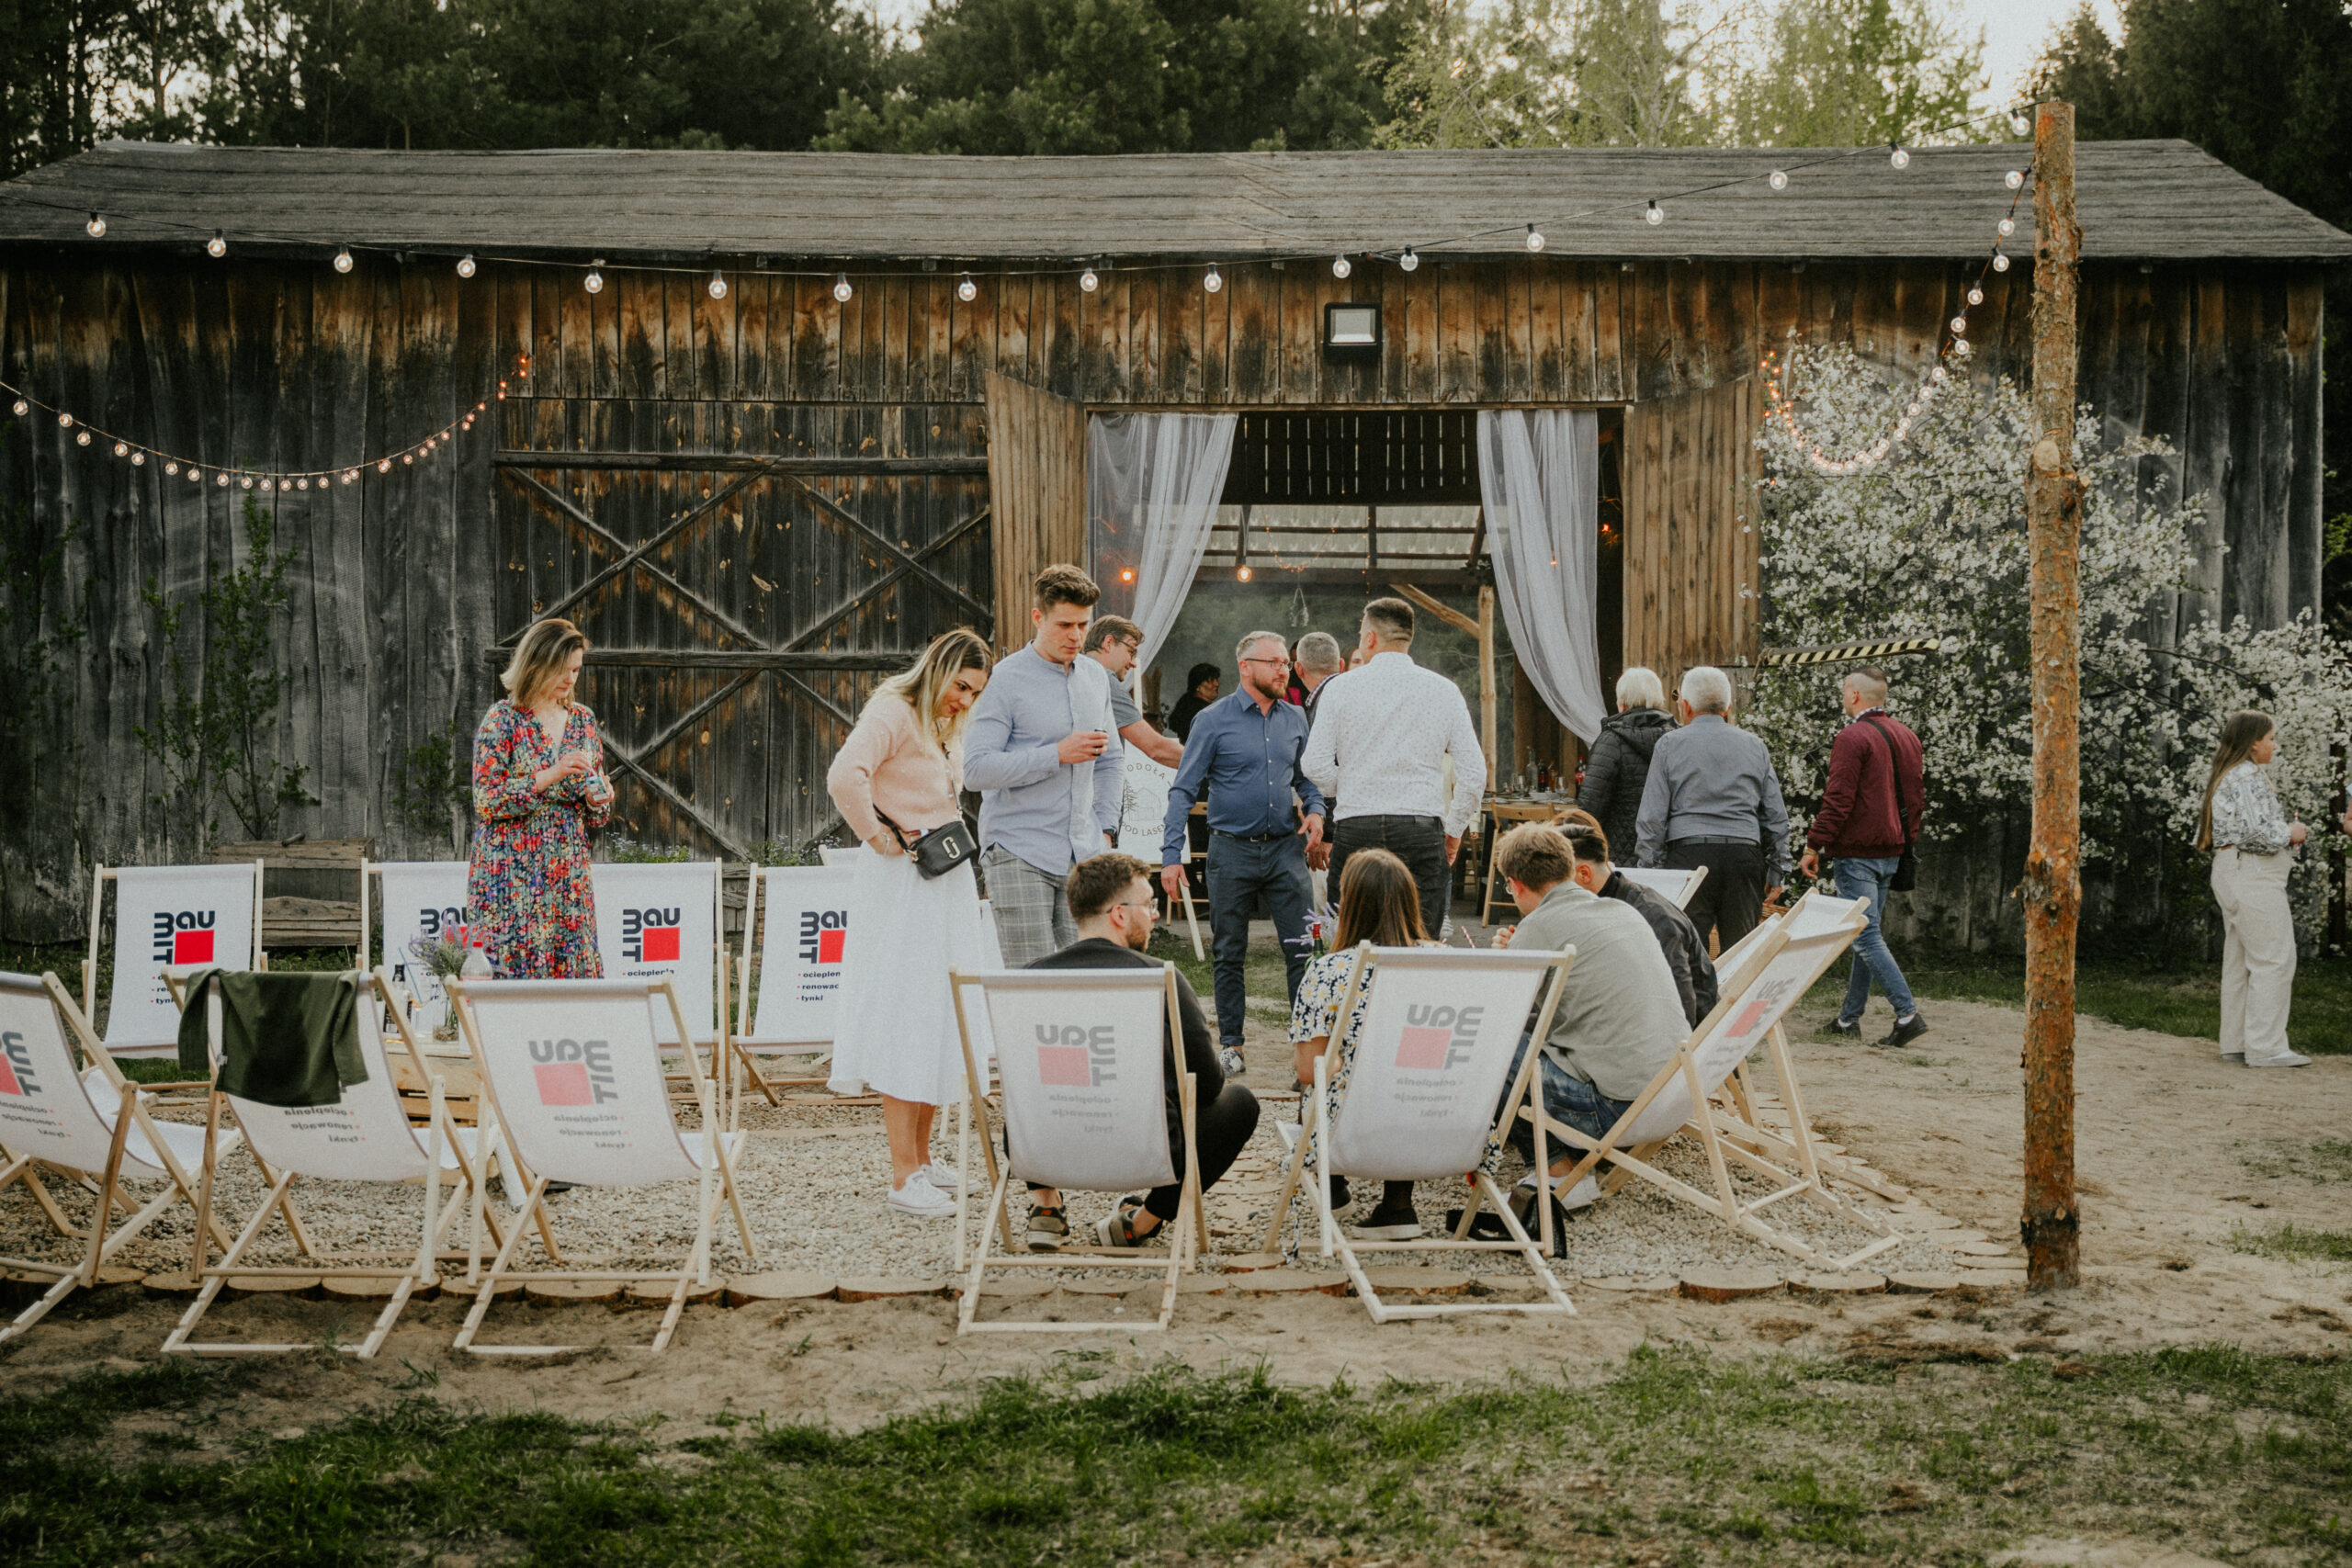 Goście odpoczywają przed stodołą podczas wesela w stylu slow – miejsce do odpoczynku podczas wesela